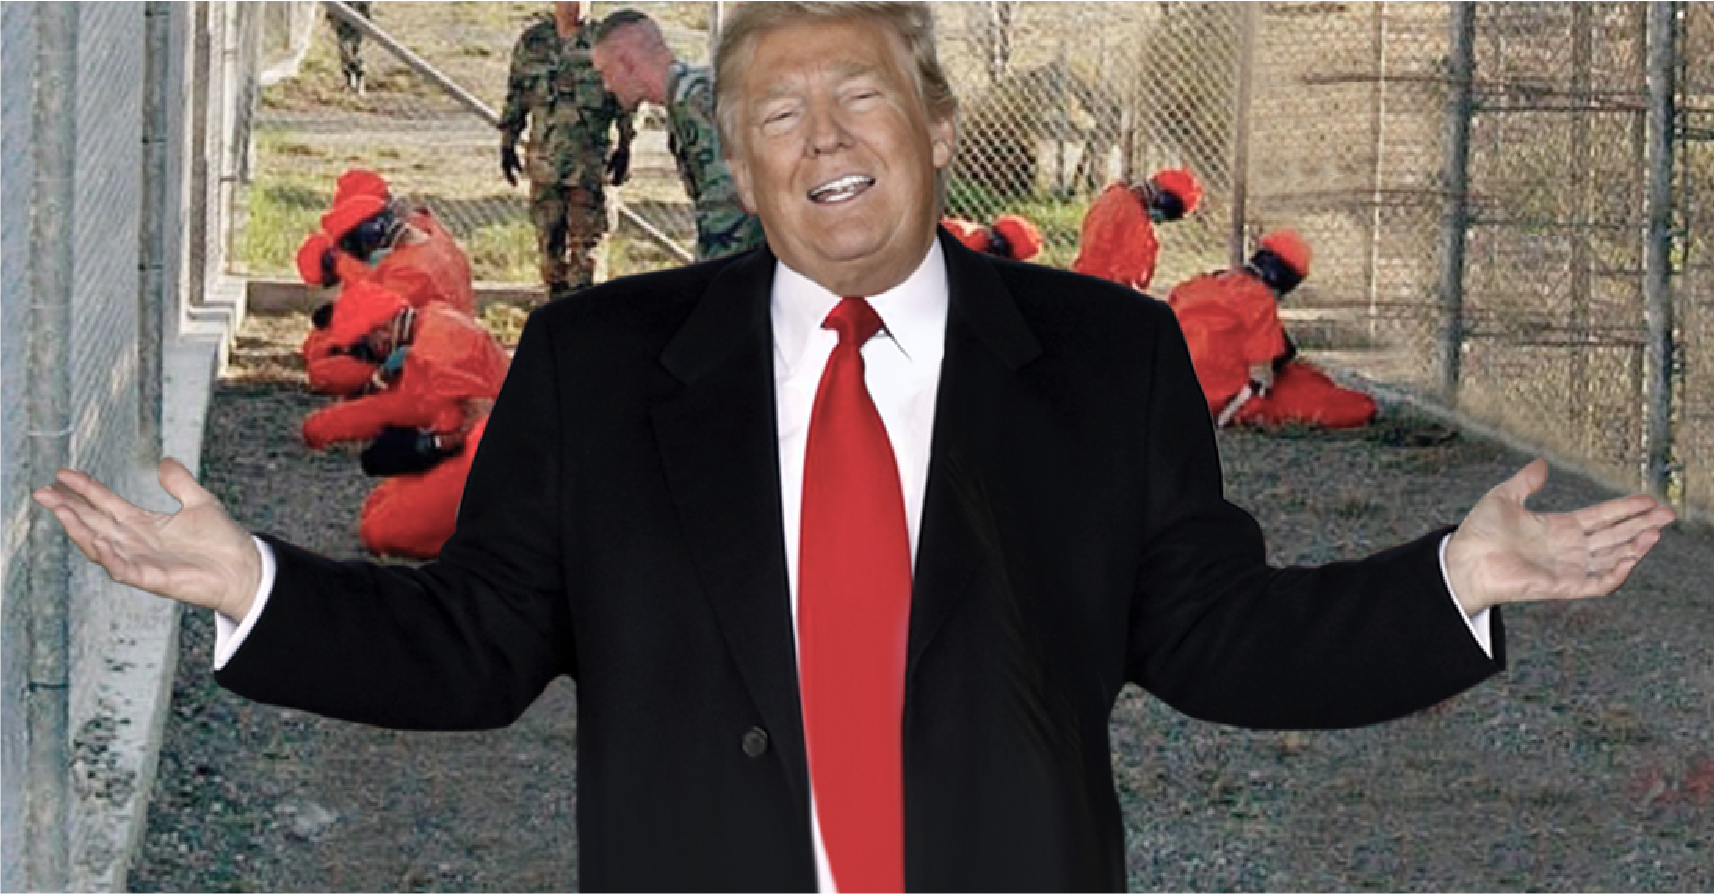 صورة ترامب يبقي على غوانتنامو ريثما ينشئ معسكر اعتقال محترم كالمعتقلات النازية